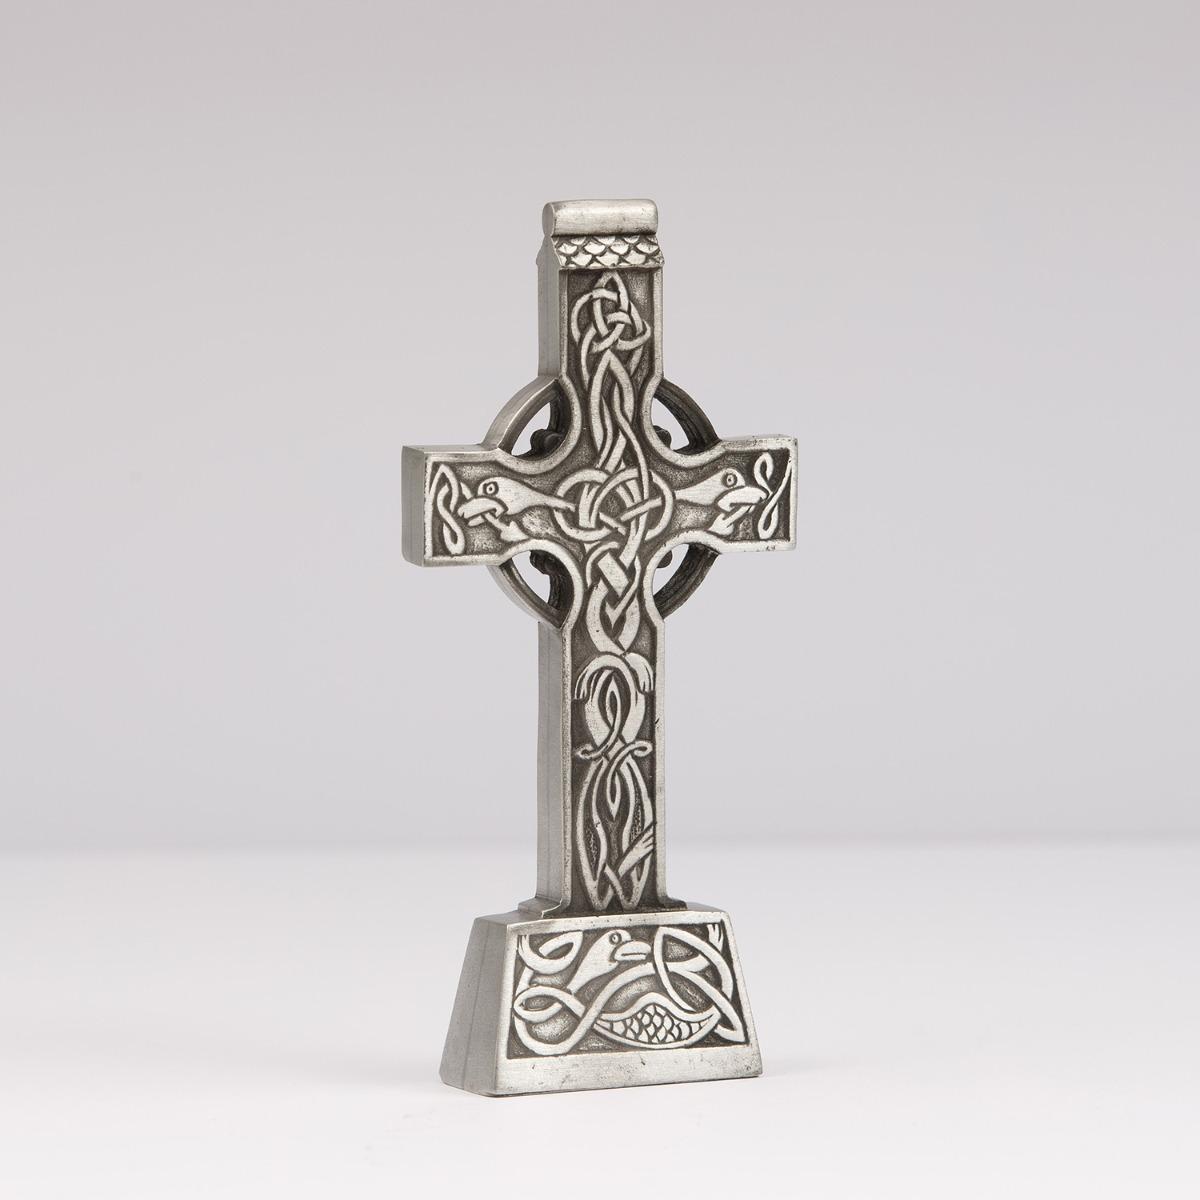 Mullingar Pewter Celtic Cross Ornament Irish homeware